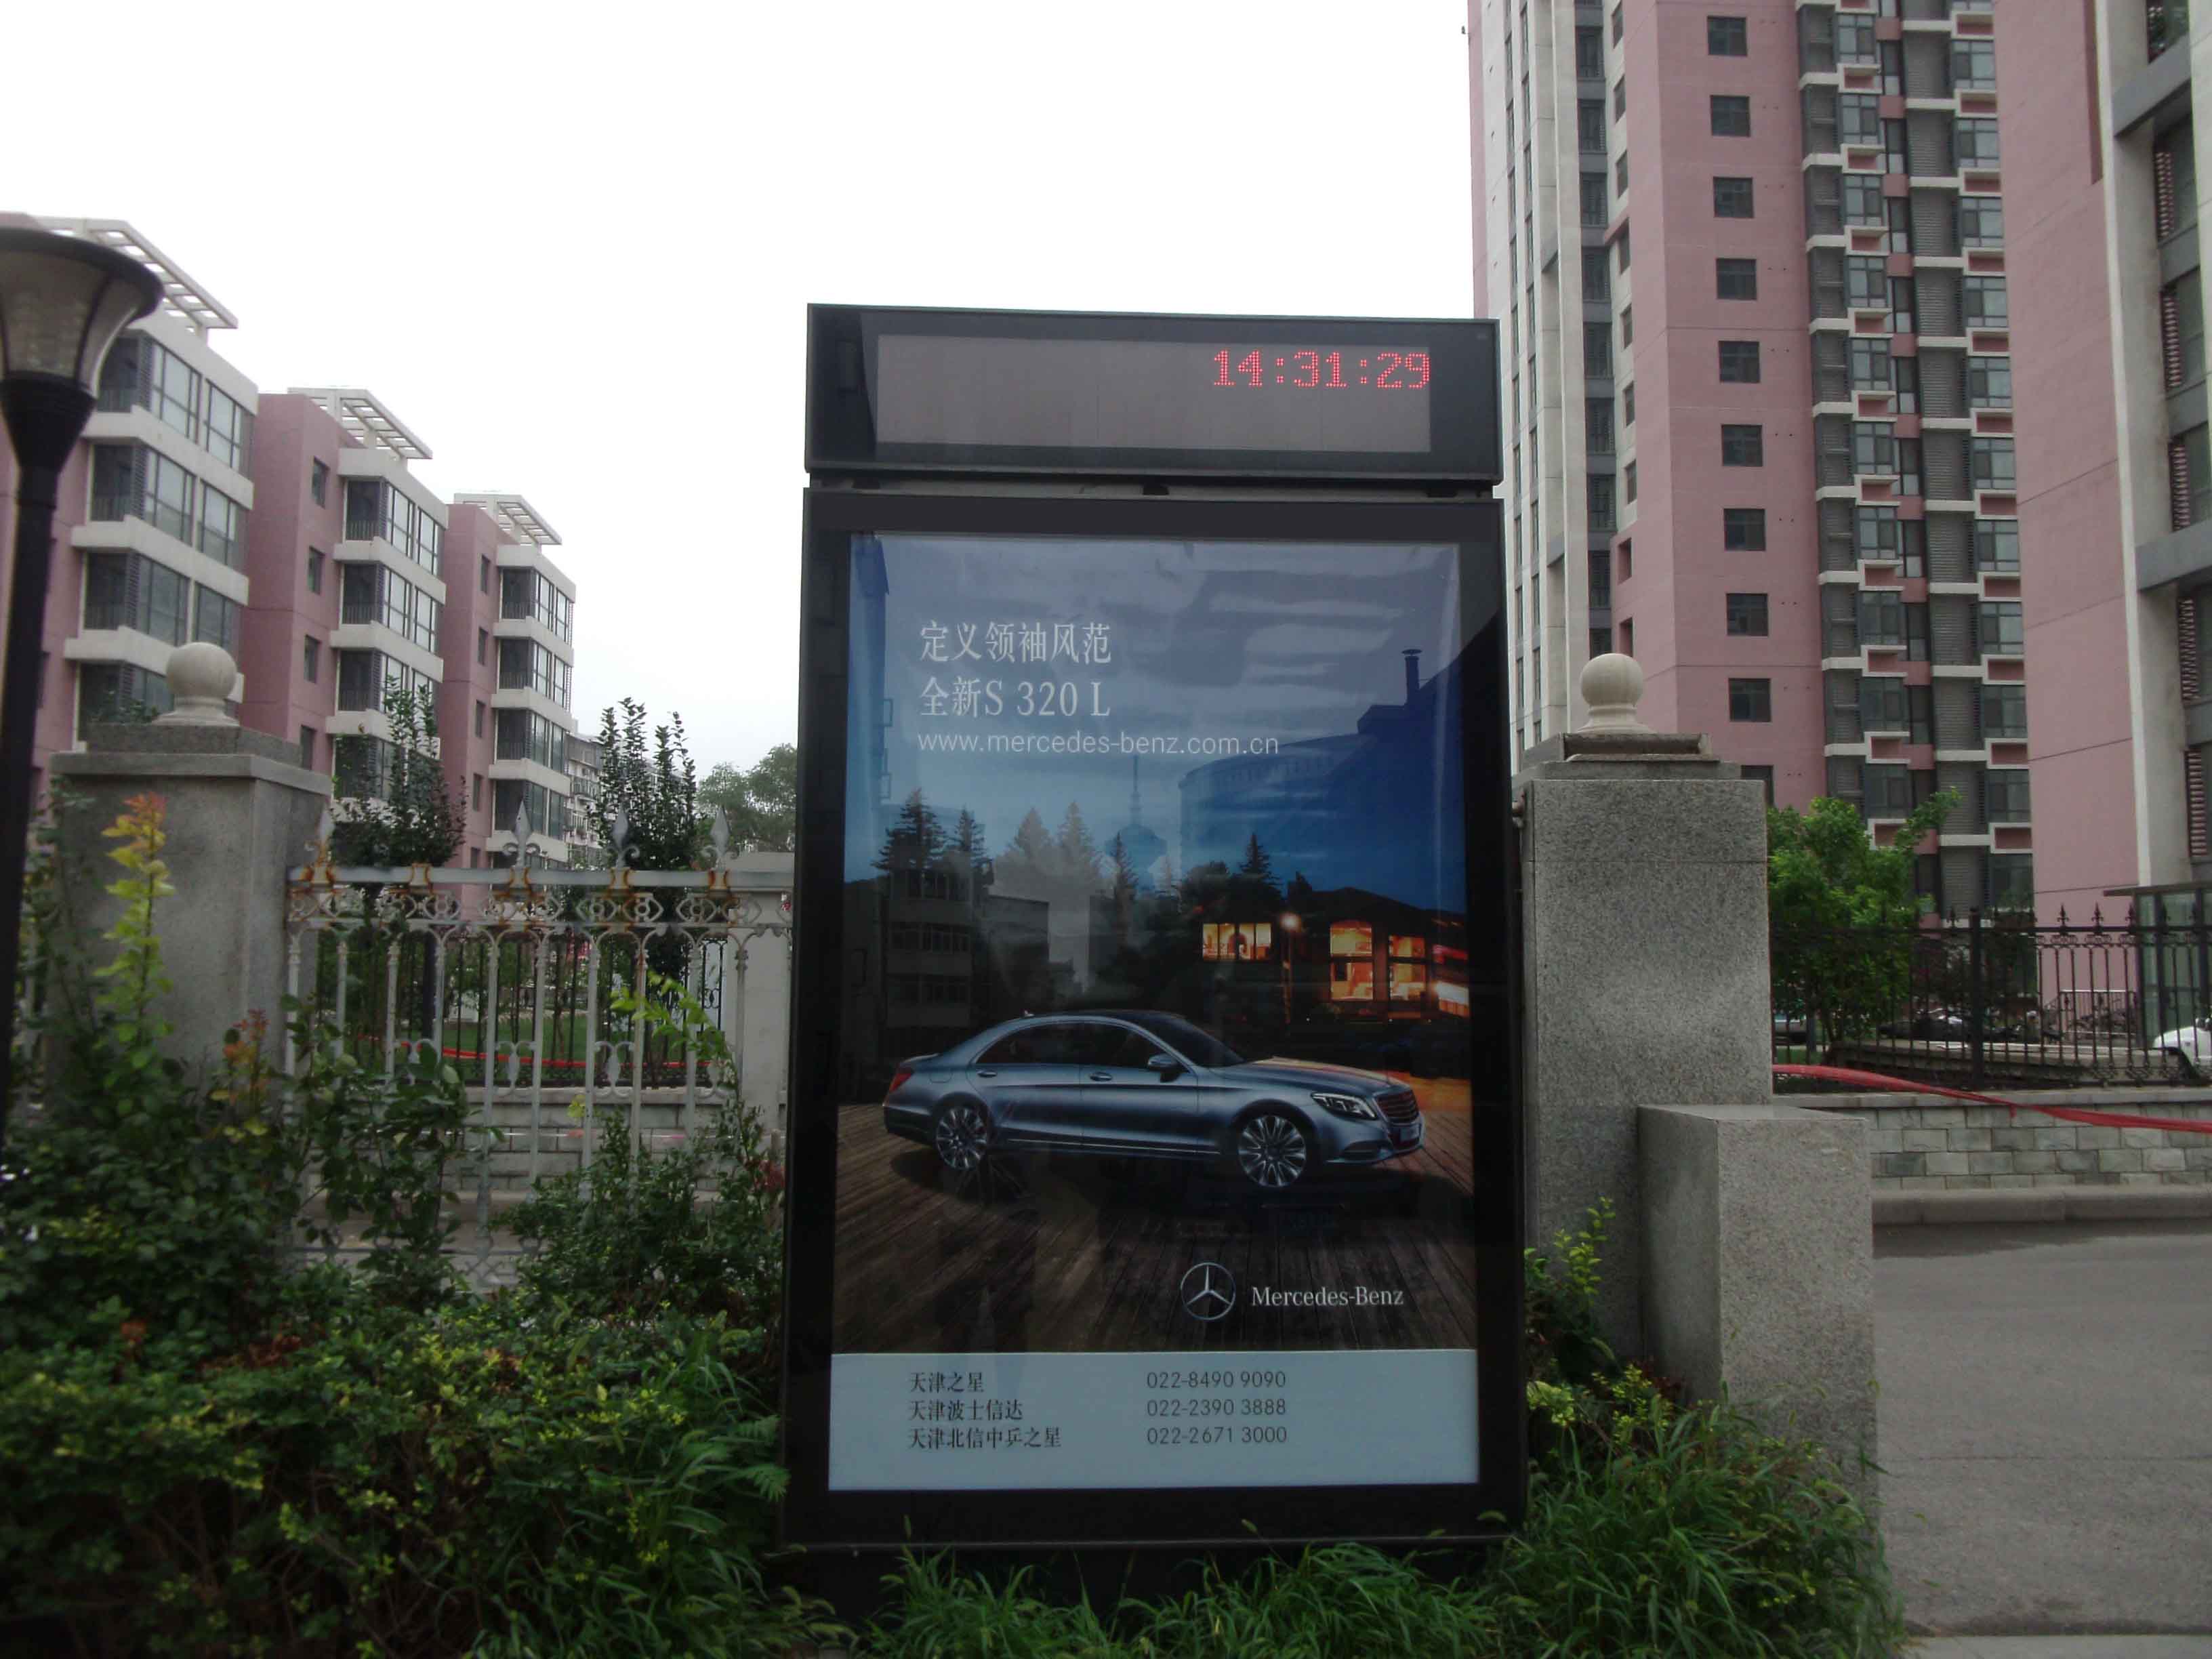 天津电梯广告天津电梯广告公司天津电梯广告价格